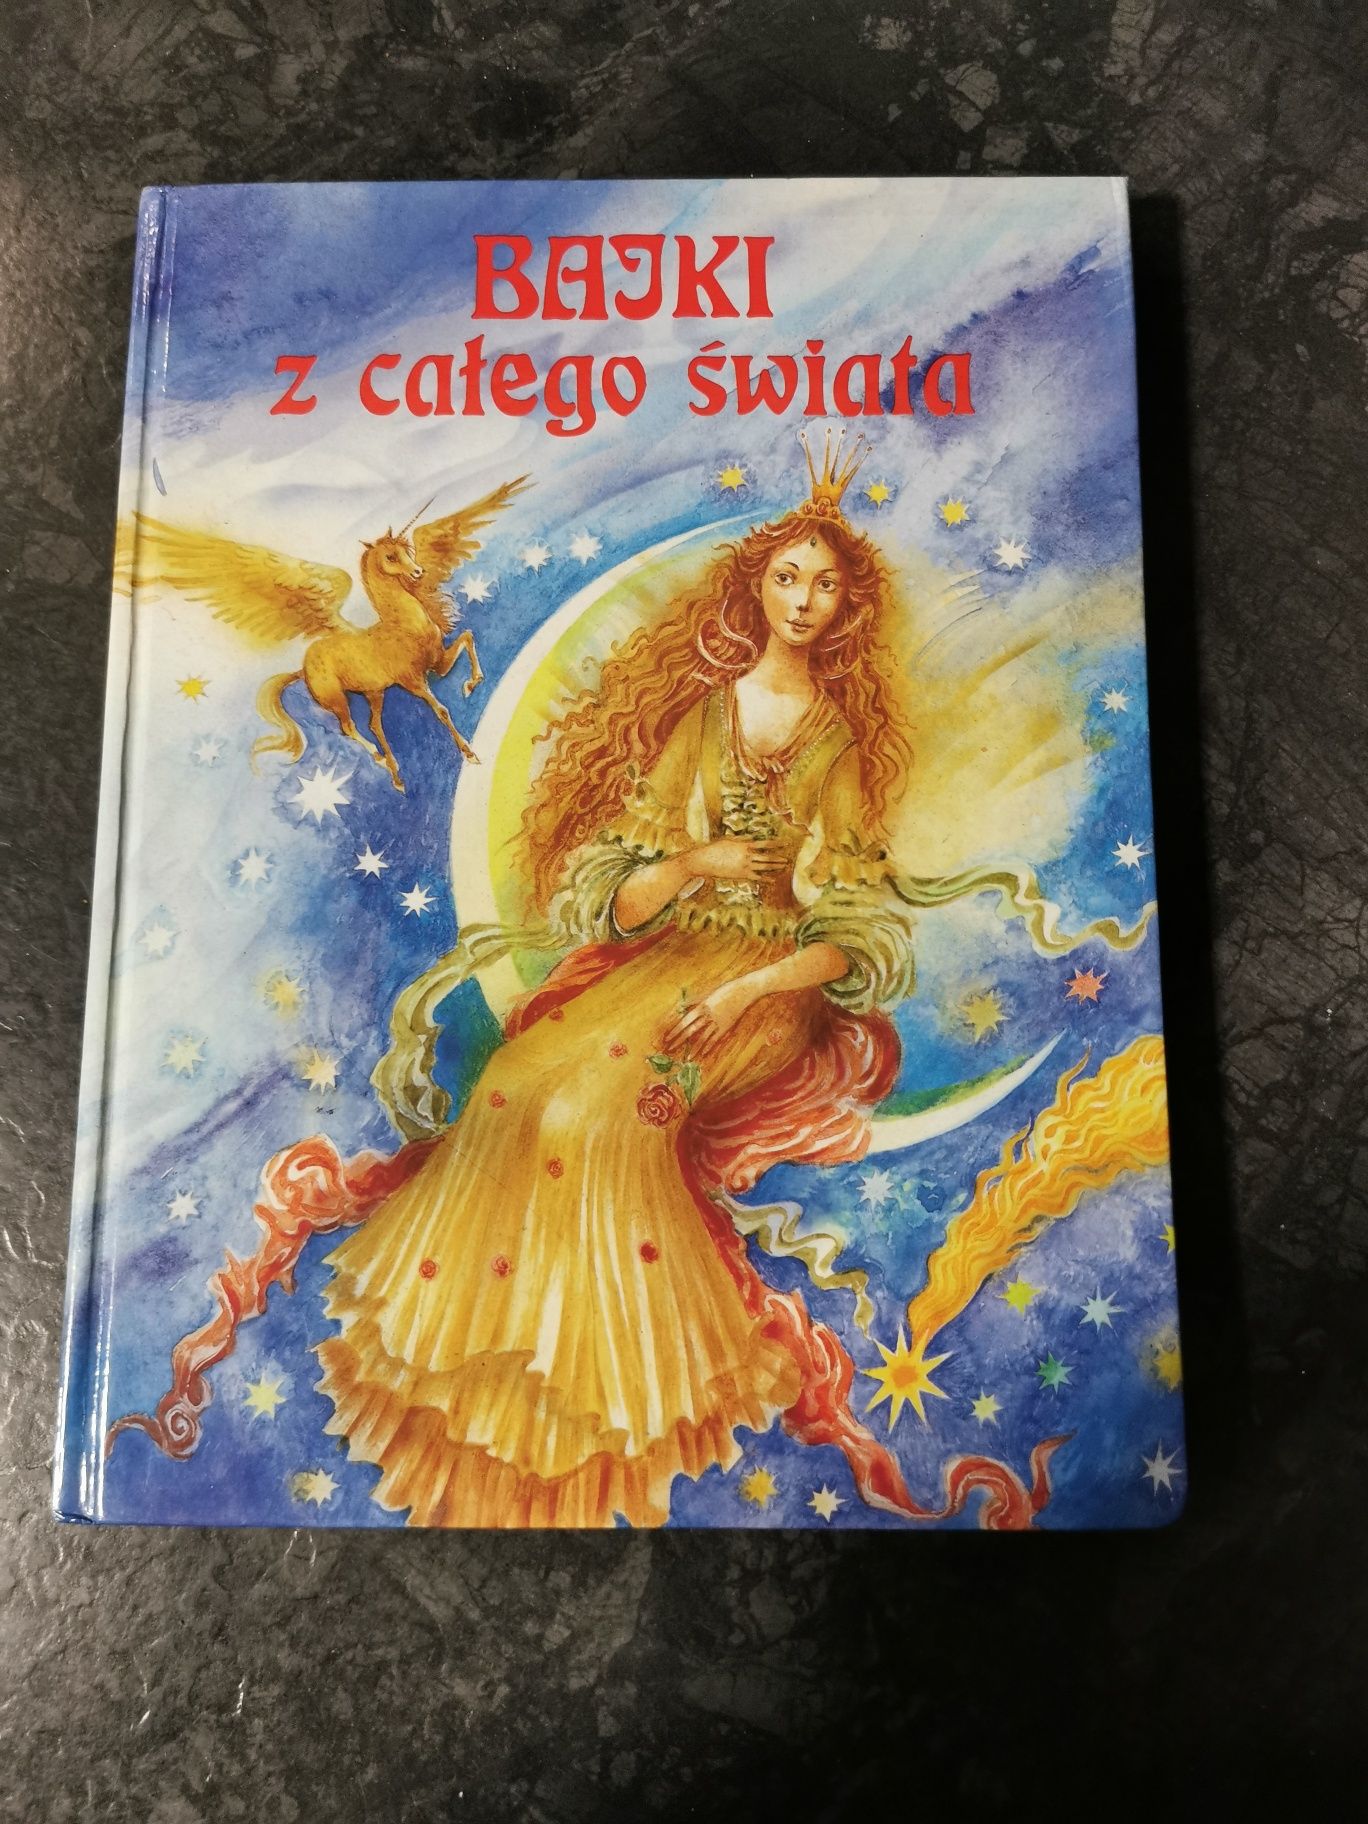 Książka bajki z całego świata janusova viera slovart 1991